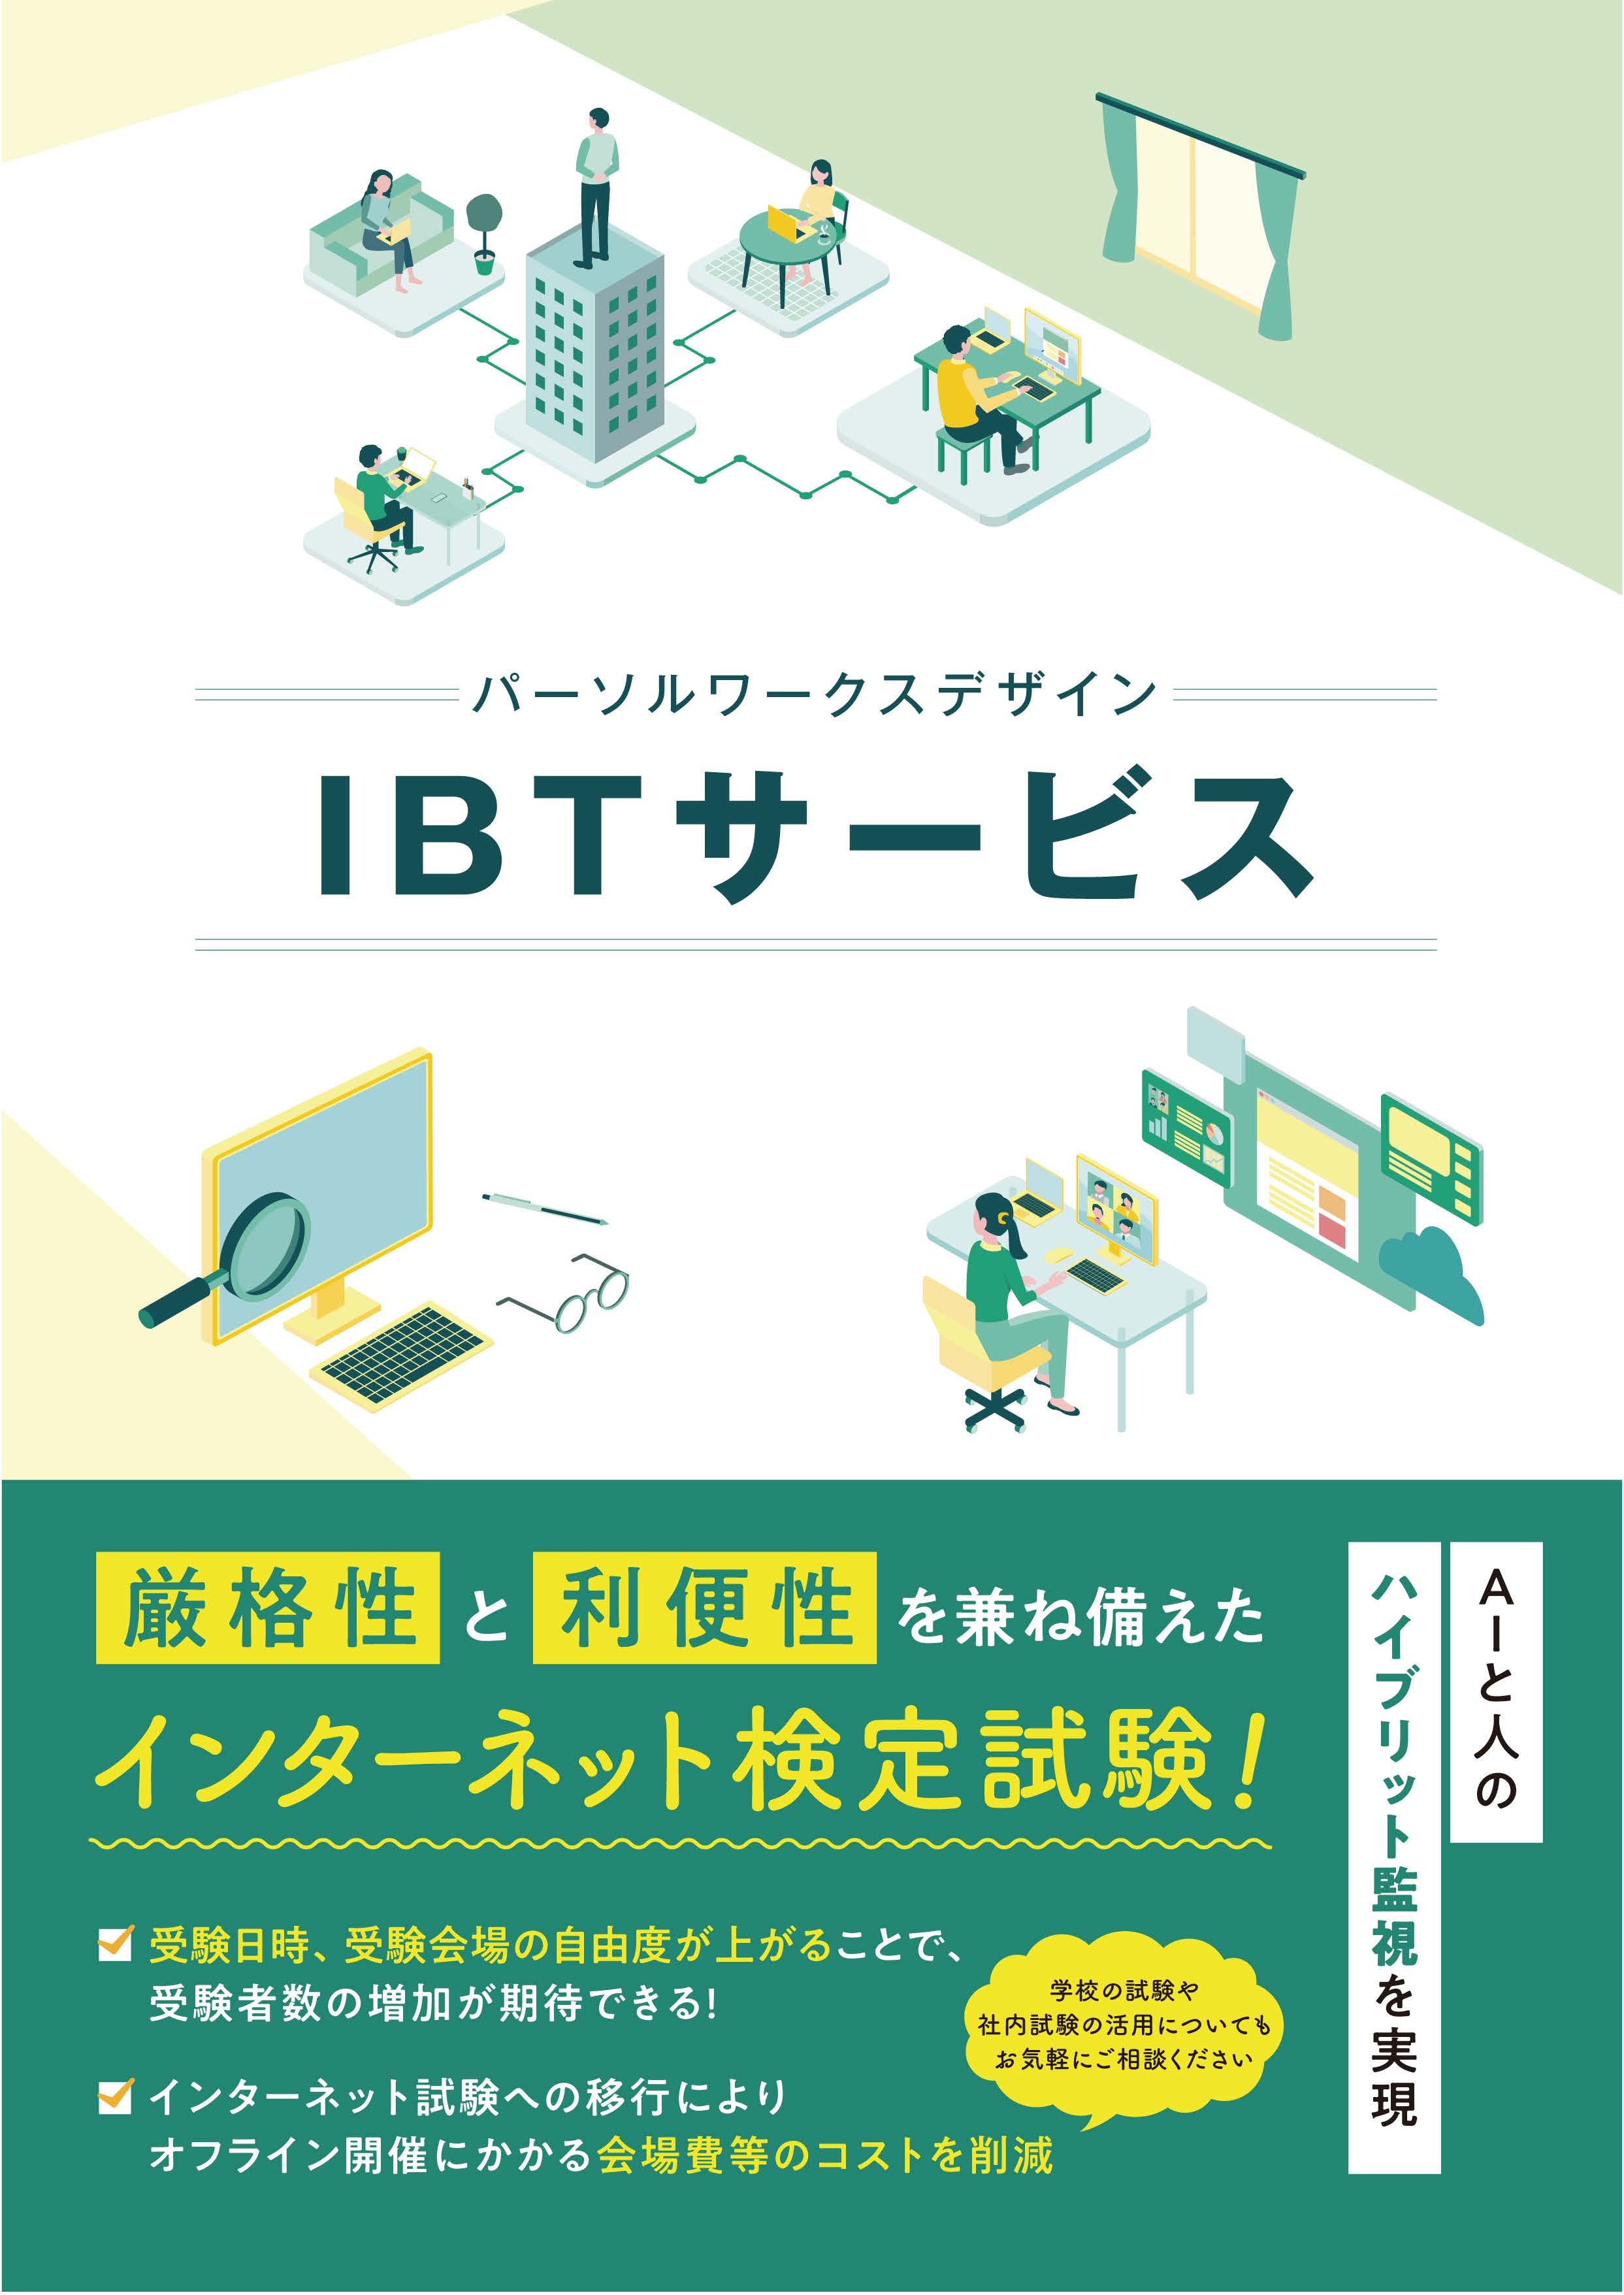 インターネット検定試験「IBTサービス」_ページ_01